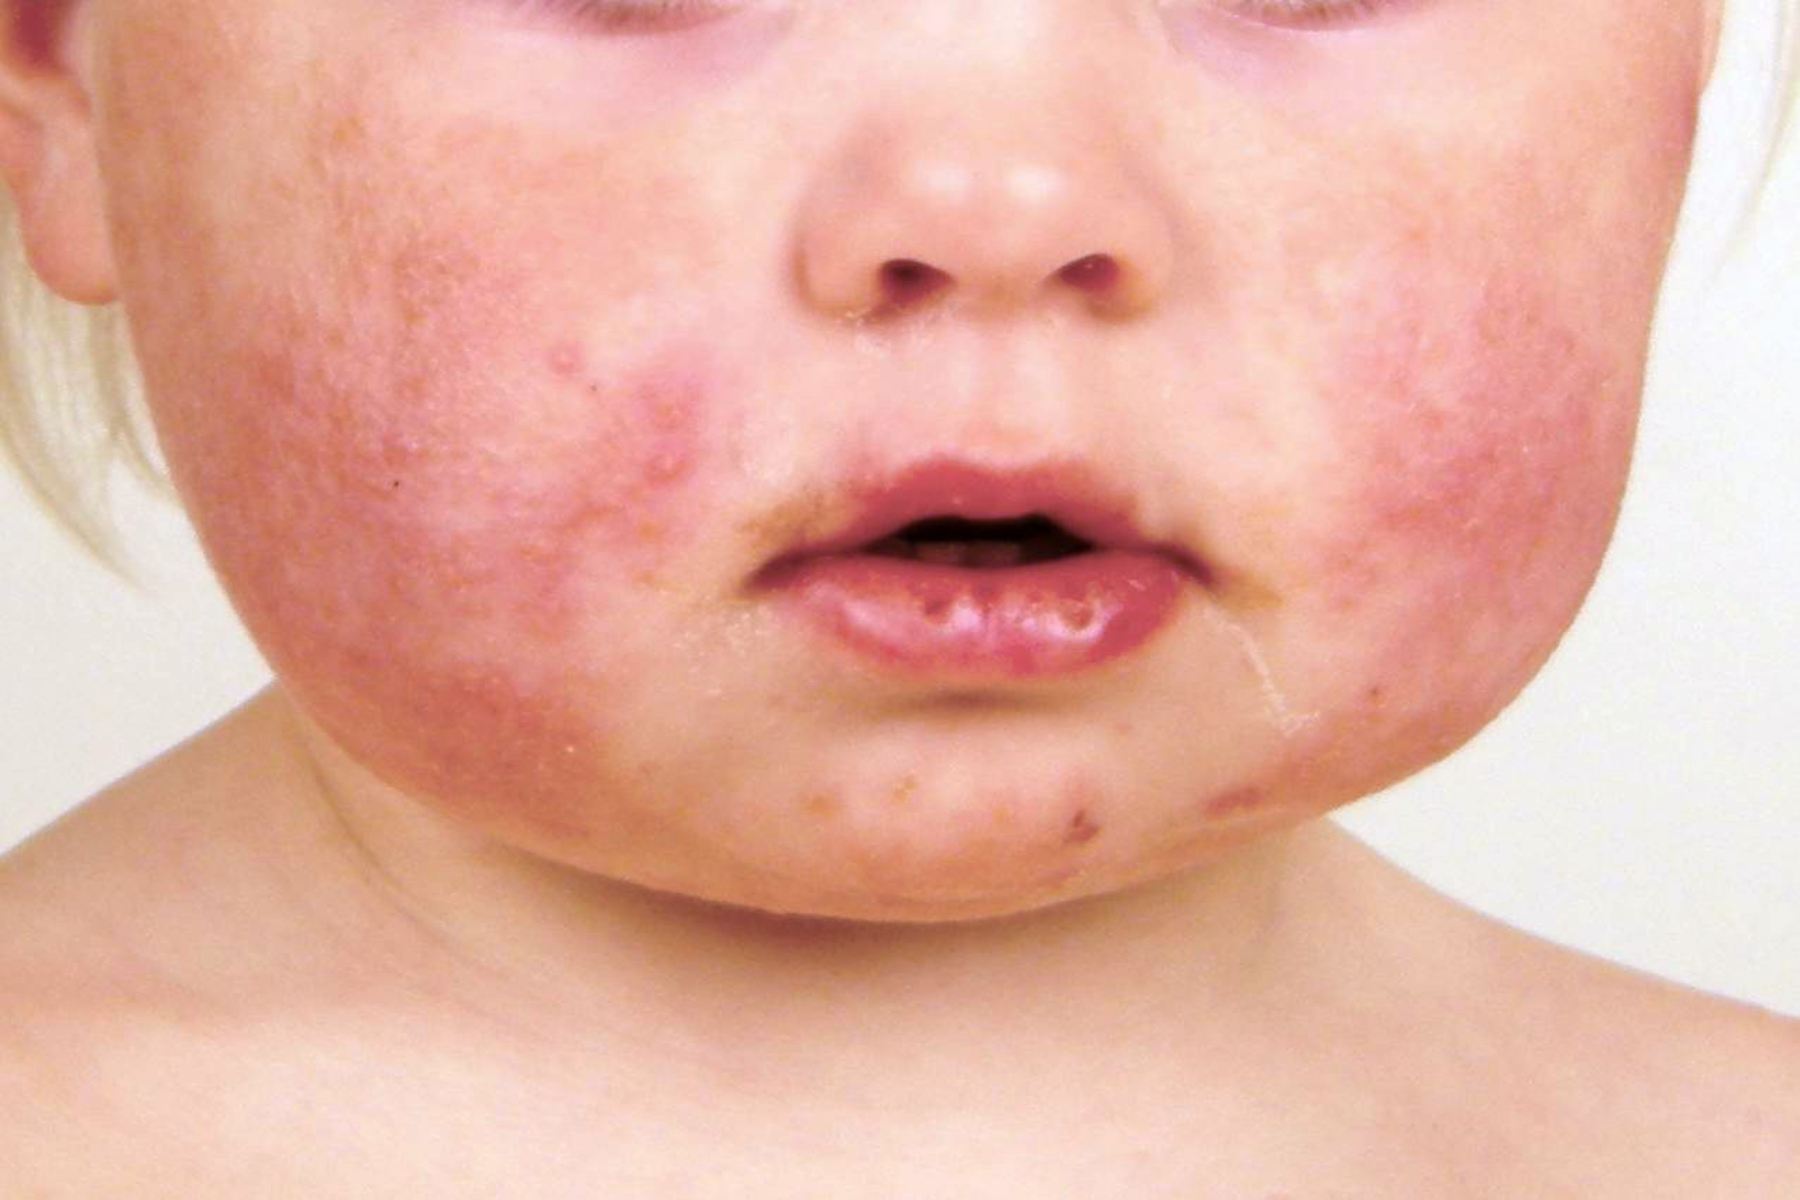 Αιφνίδιο εξάνθημα: Μια κοινή μόλυνση που συνήθως επηρεάζει τα παιδιά ηλικίας 2 ετών